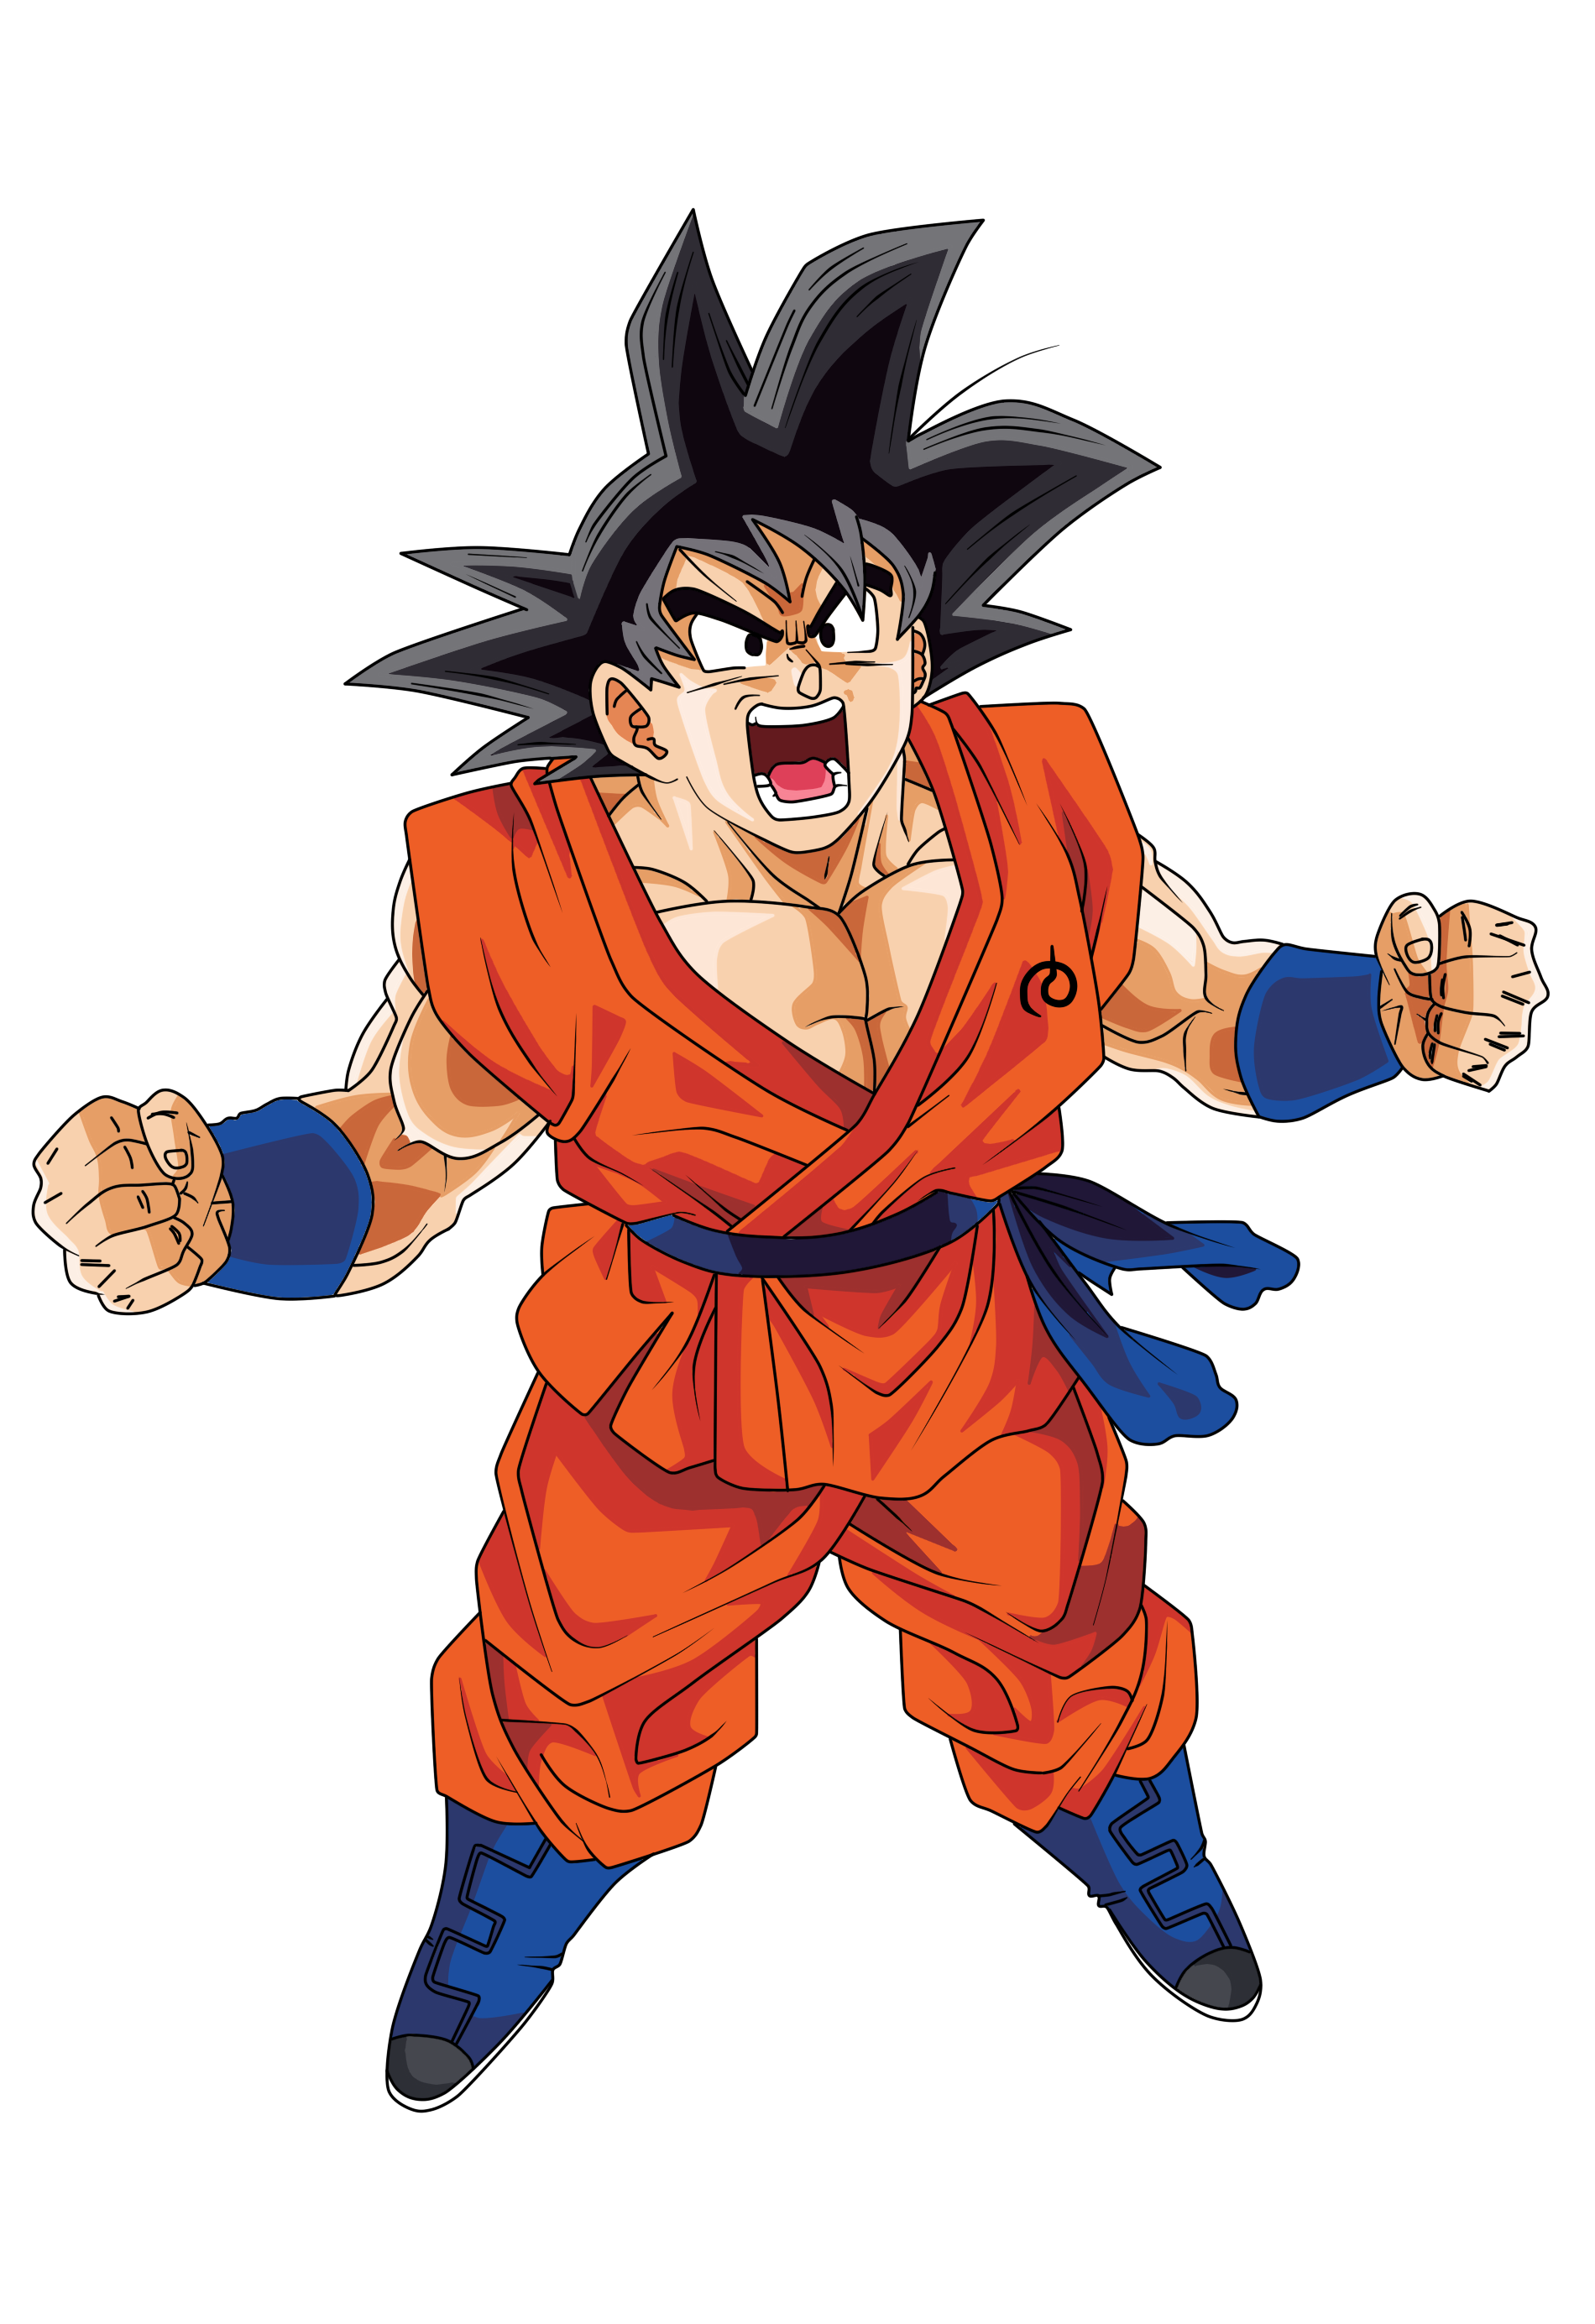 Goku | Dragon ball Super | Render by xAntroGamerx on DeviantArt